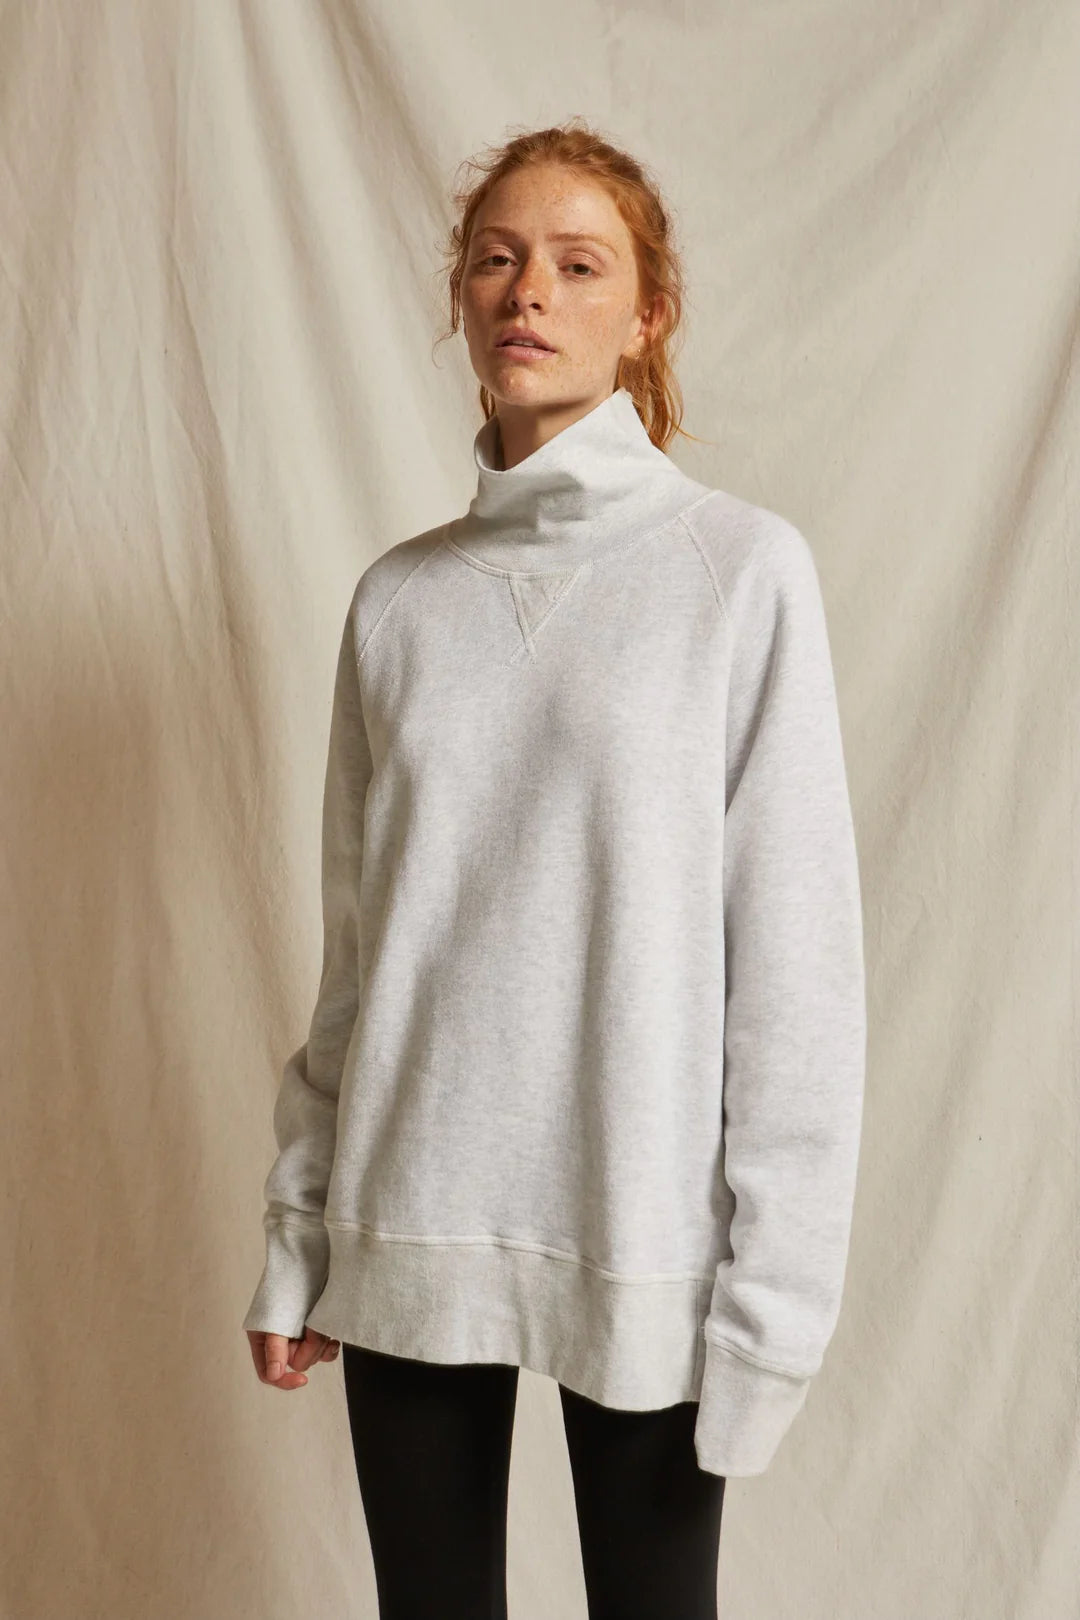 Perfect White Tee Faris Oversized Turtleneck, turtleneck sweatshirt, sweatshirt, sweats, women's clothing